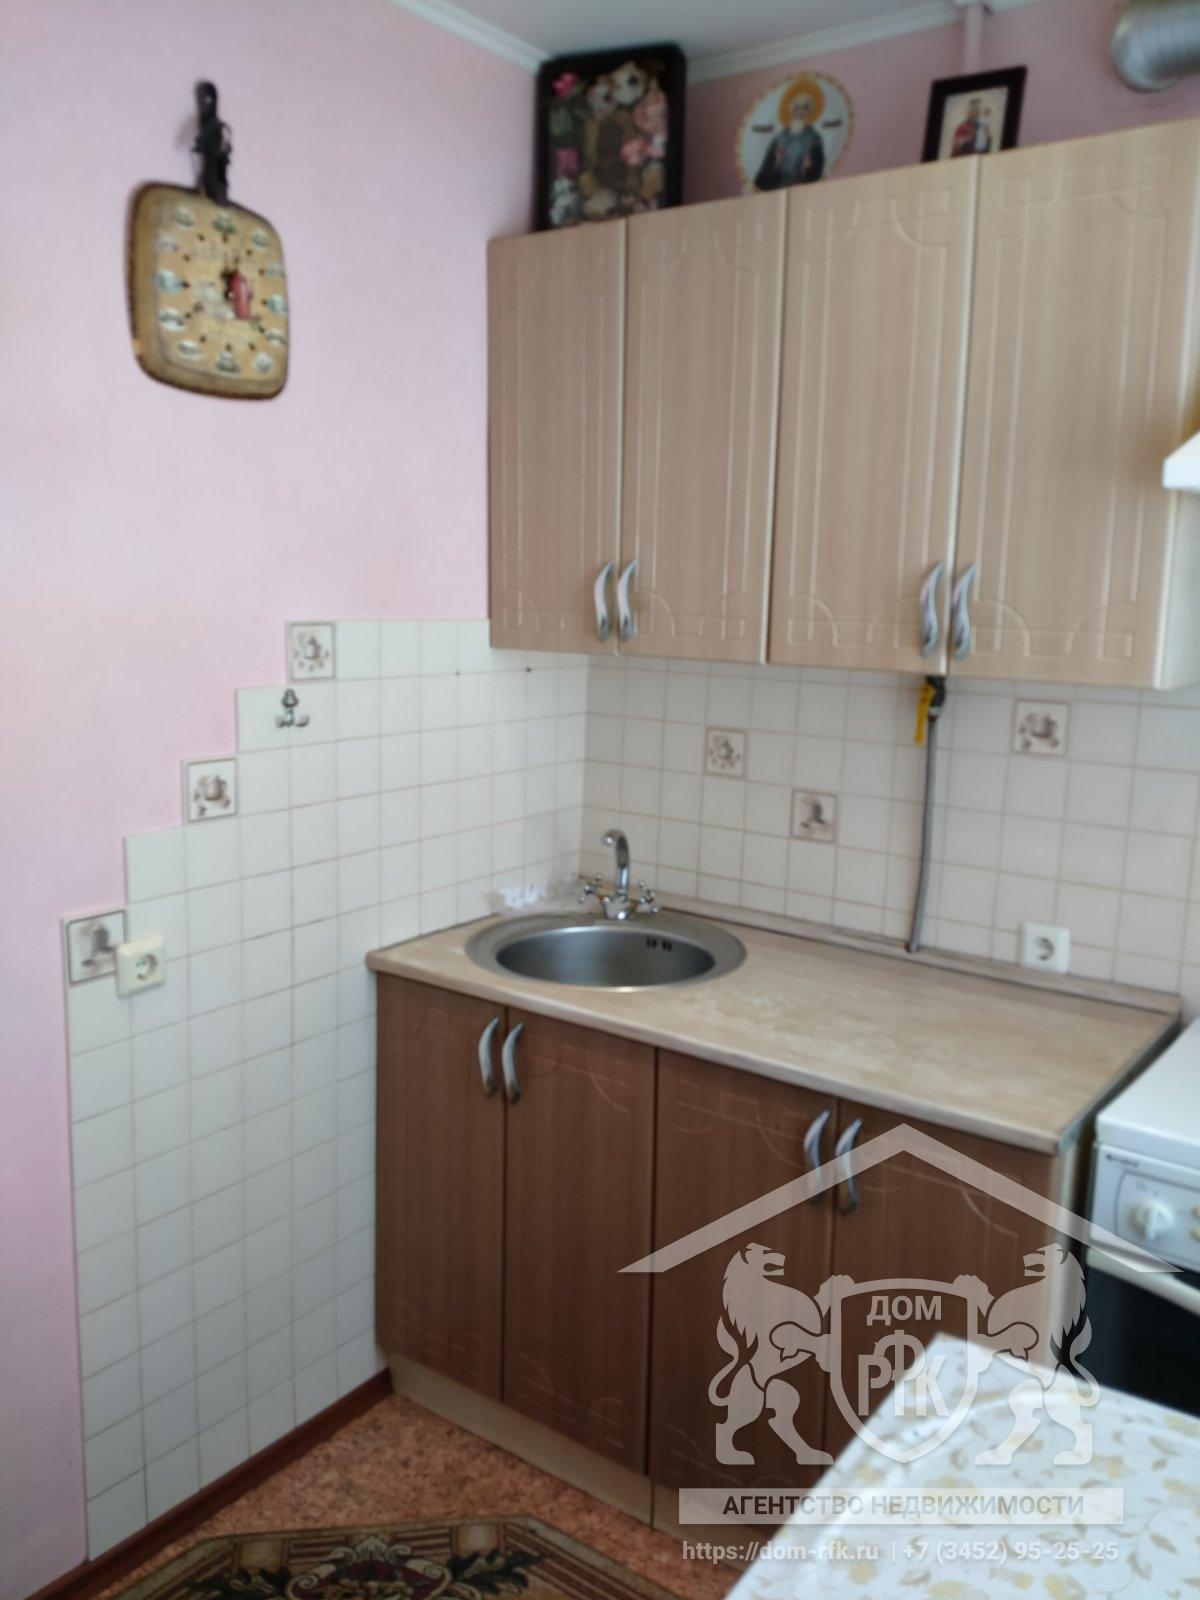 3-х комнатная квартира в благоустроенном доме в селе Ярково